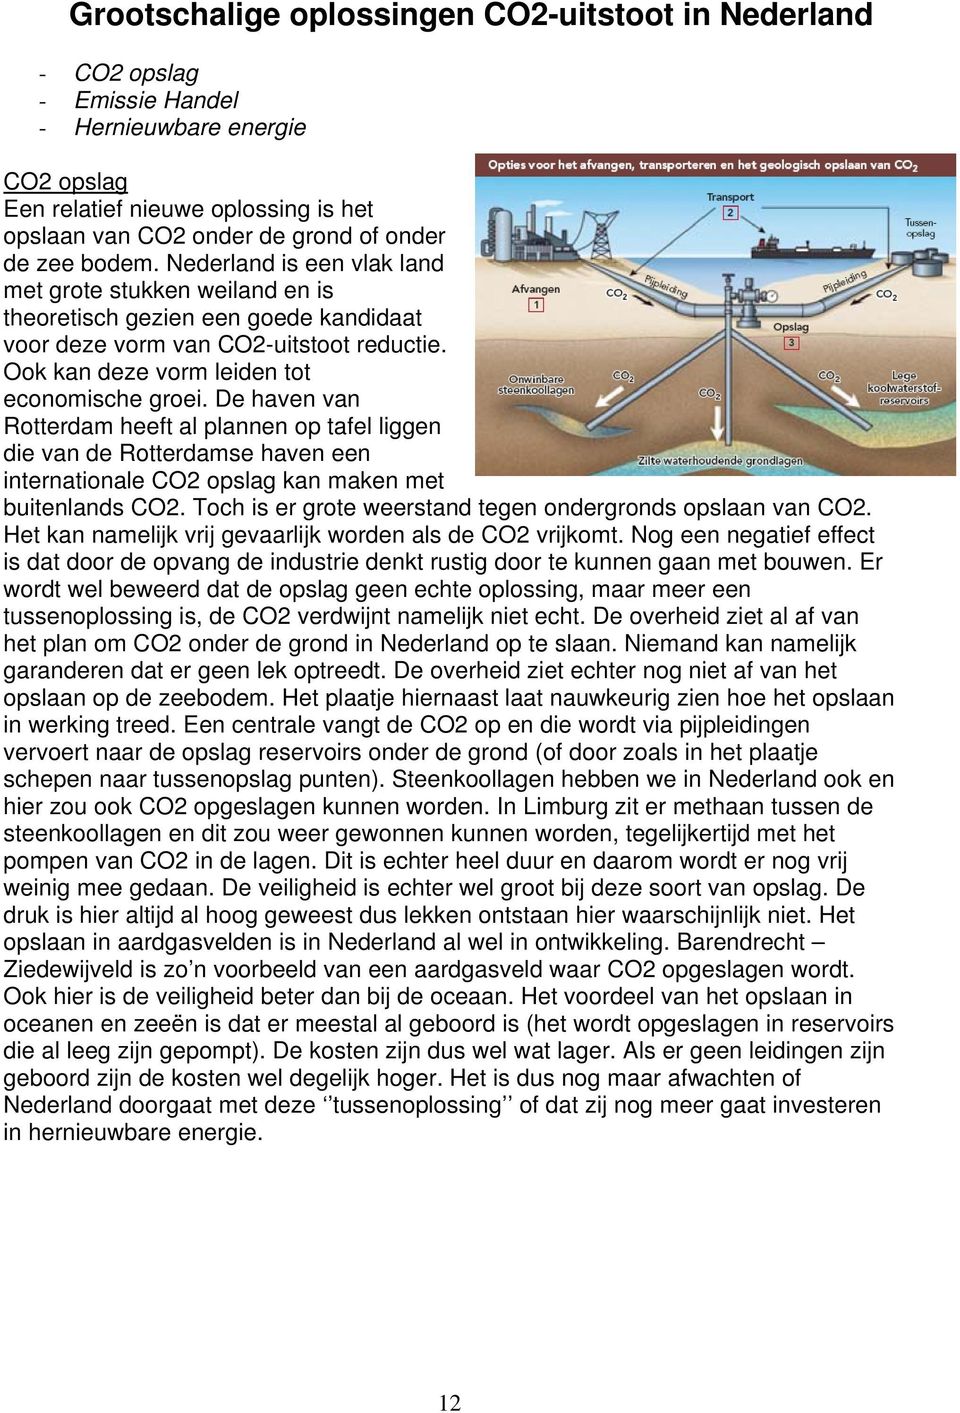 De haven van Rotterdam heeft al plannen op tafel liggen die van de Rotterdamse haven een internationale CO2 opslag kan maken met buitenlands CO2.